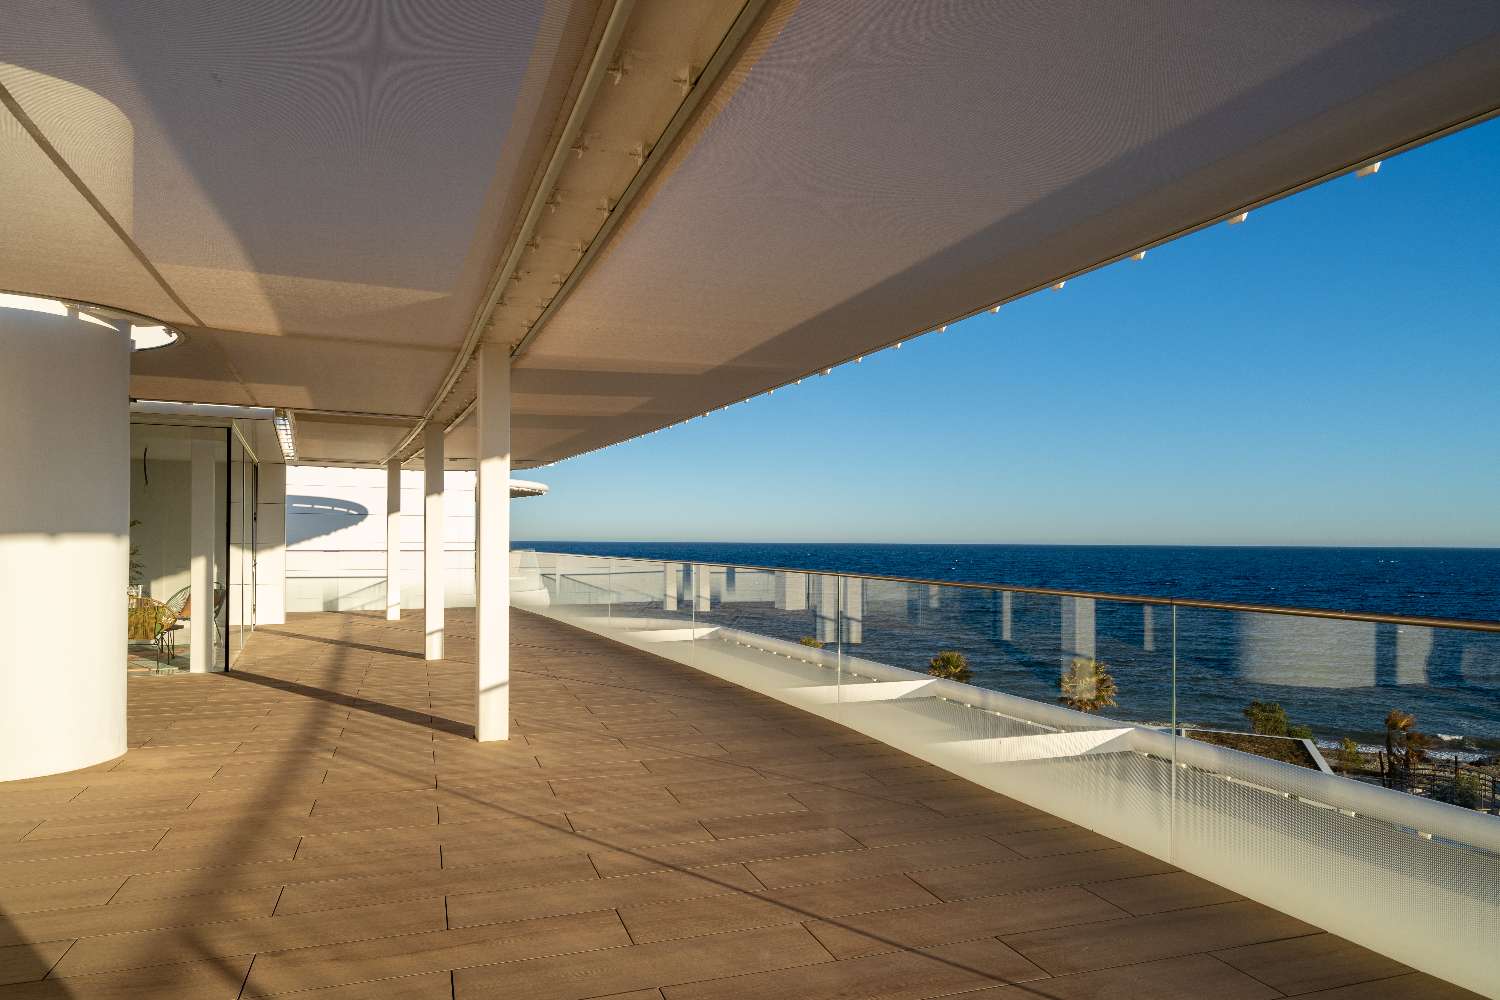 بنتهاوس دوبلكس رائع من 4 غرف نوم مع مناظر بانورامية للبحر. يشمل السعر التصميم الداخلي من Aalto.